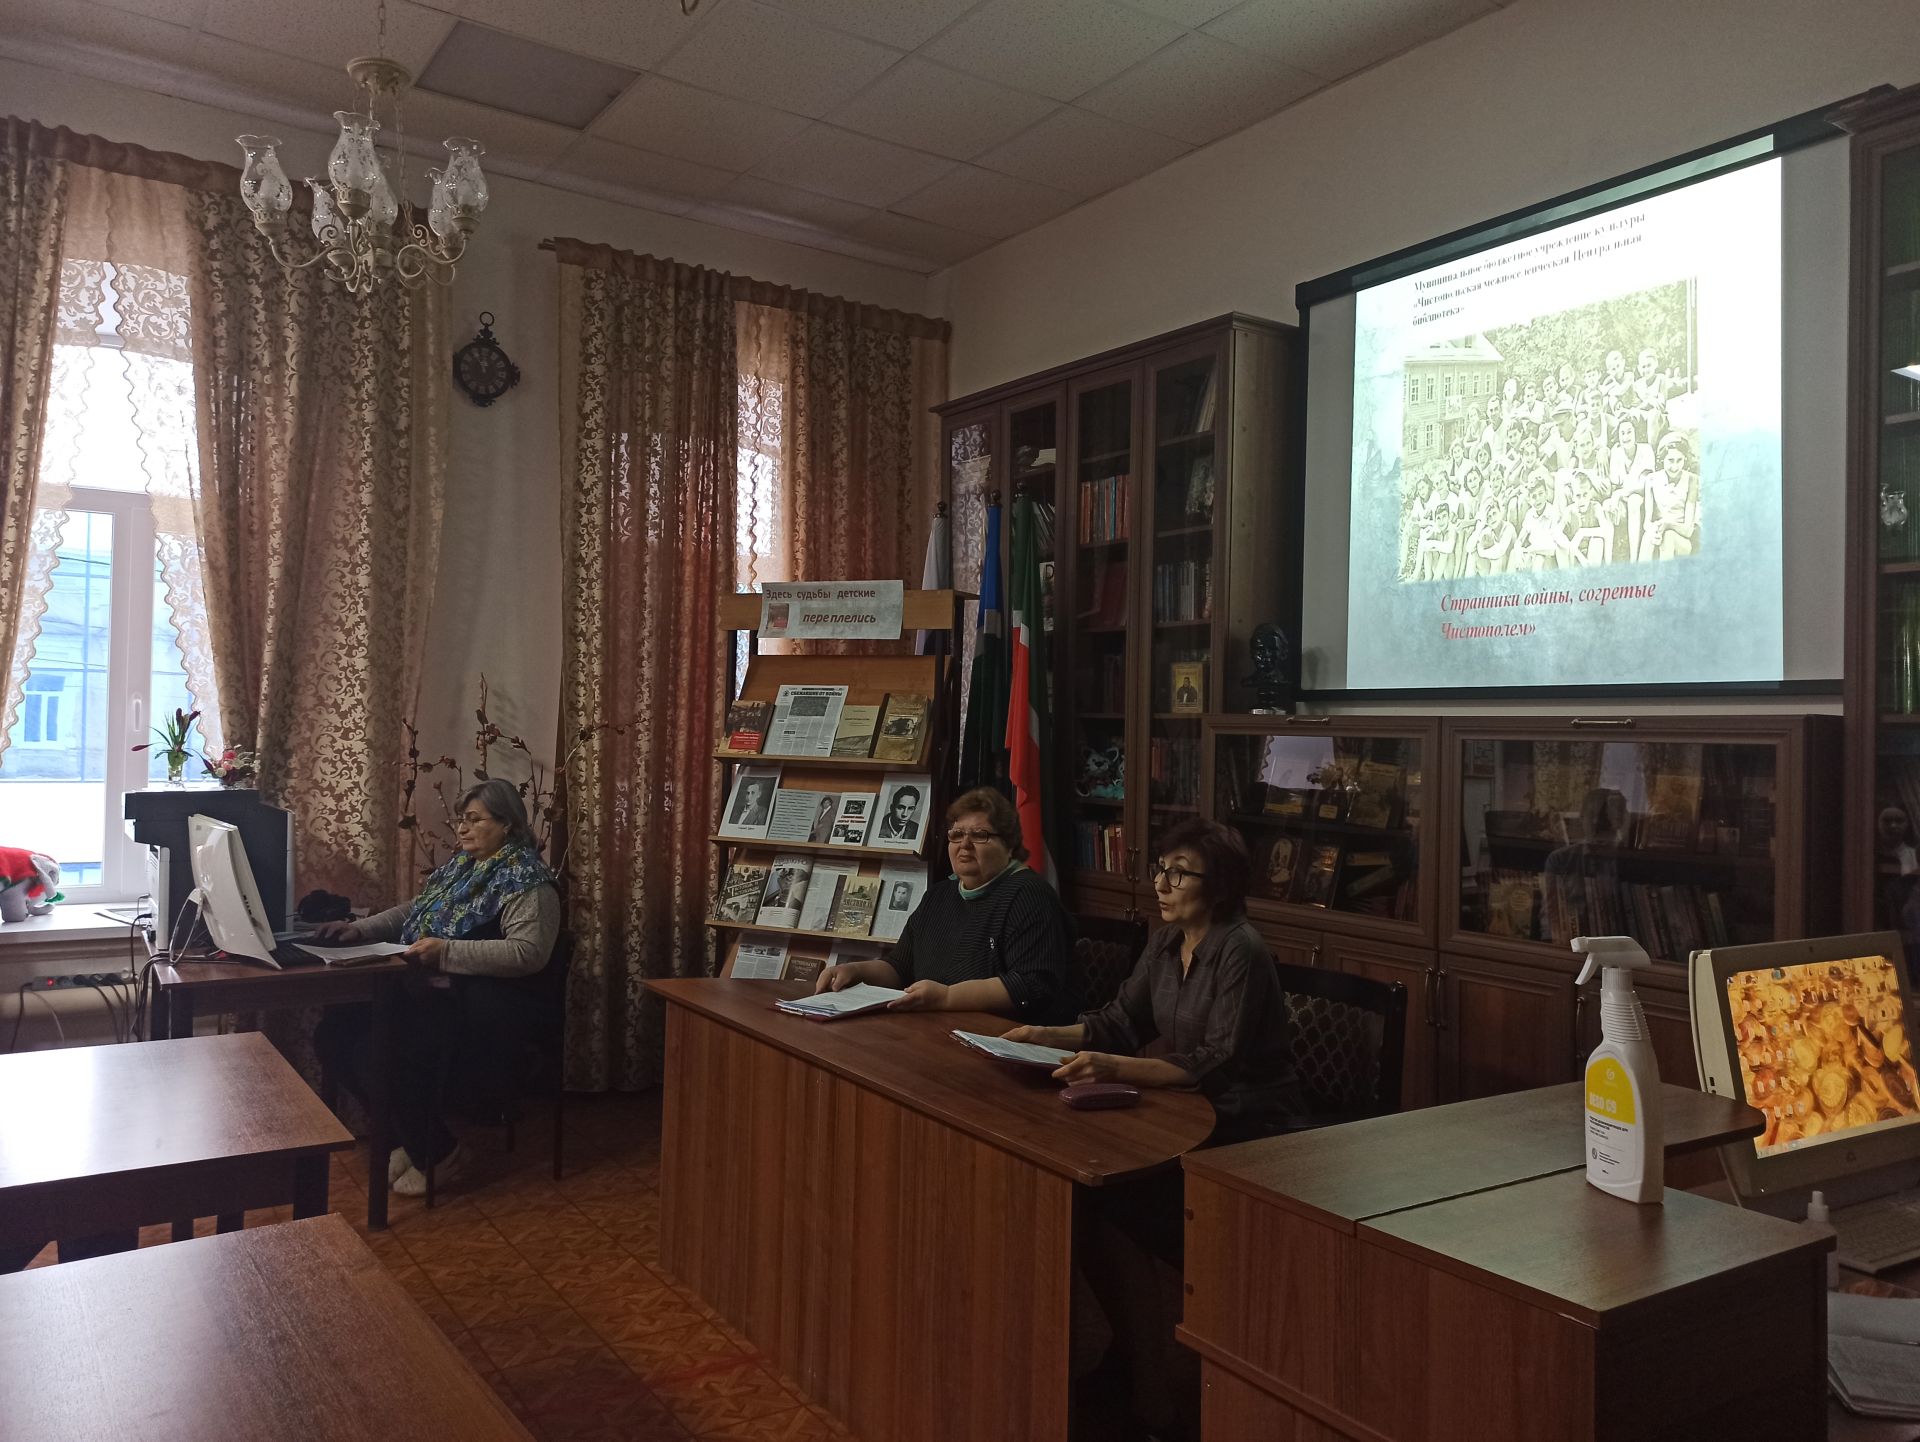 Чистопольские школьники посетили библиотеку по программе «Пушкинская карта»